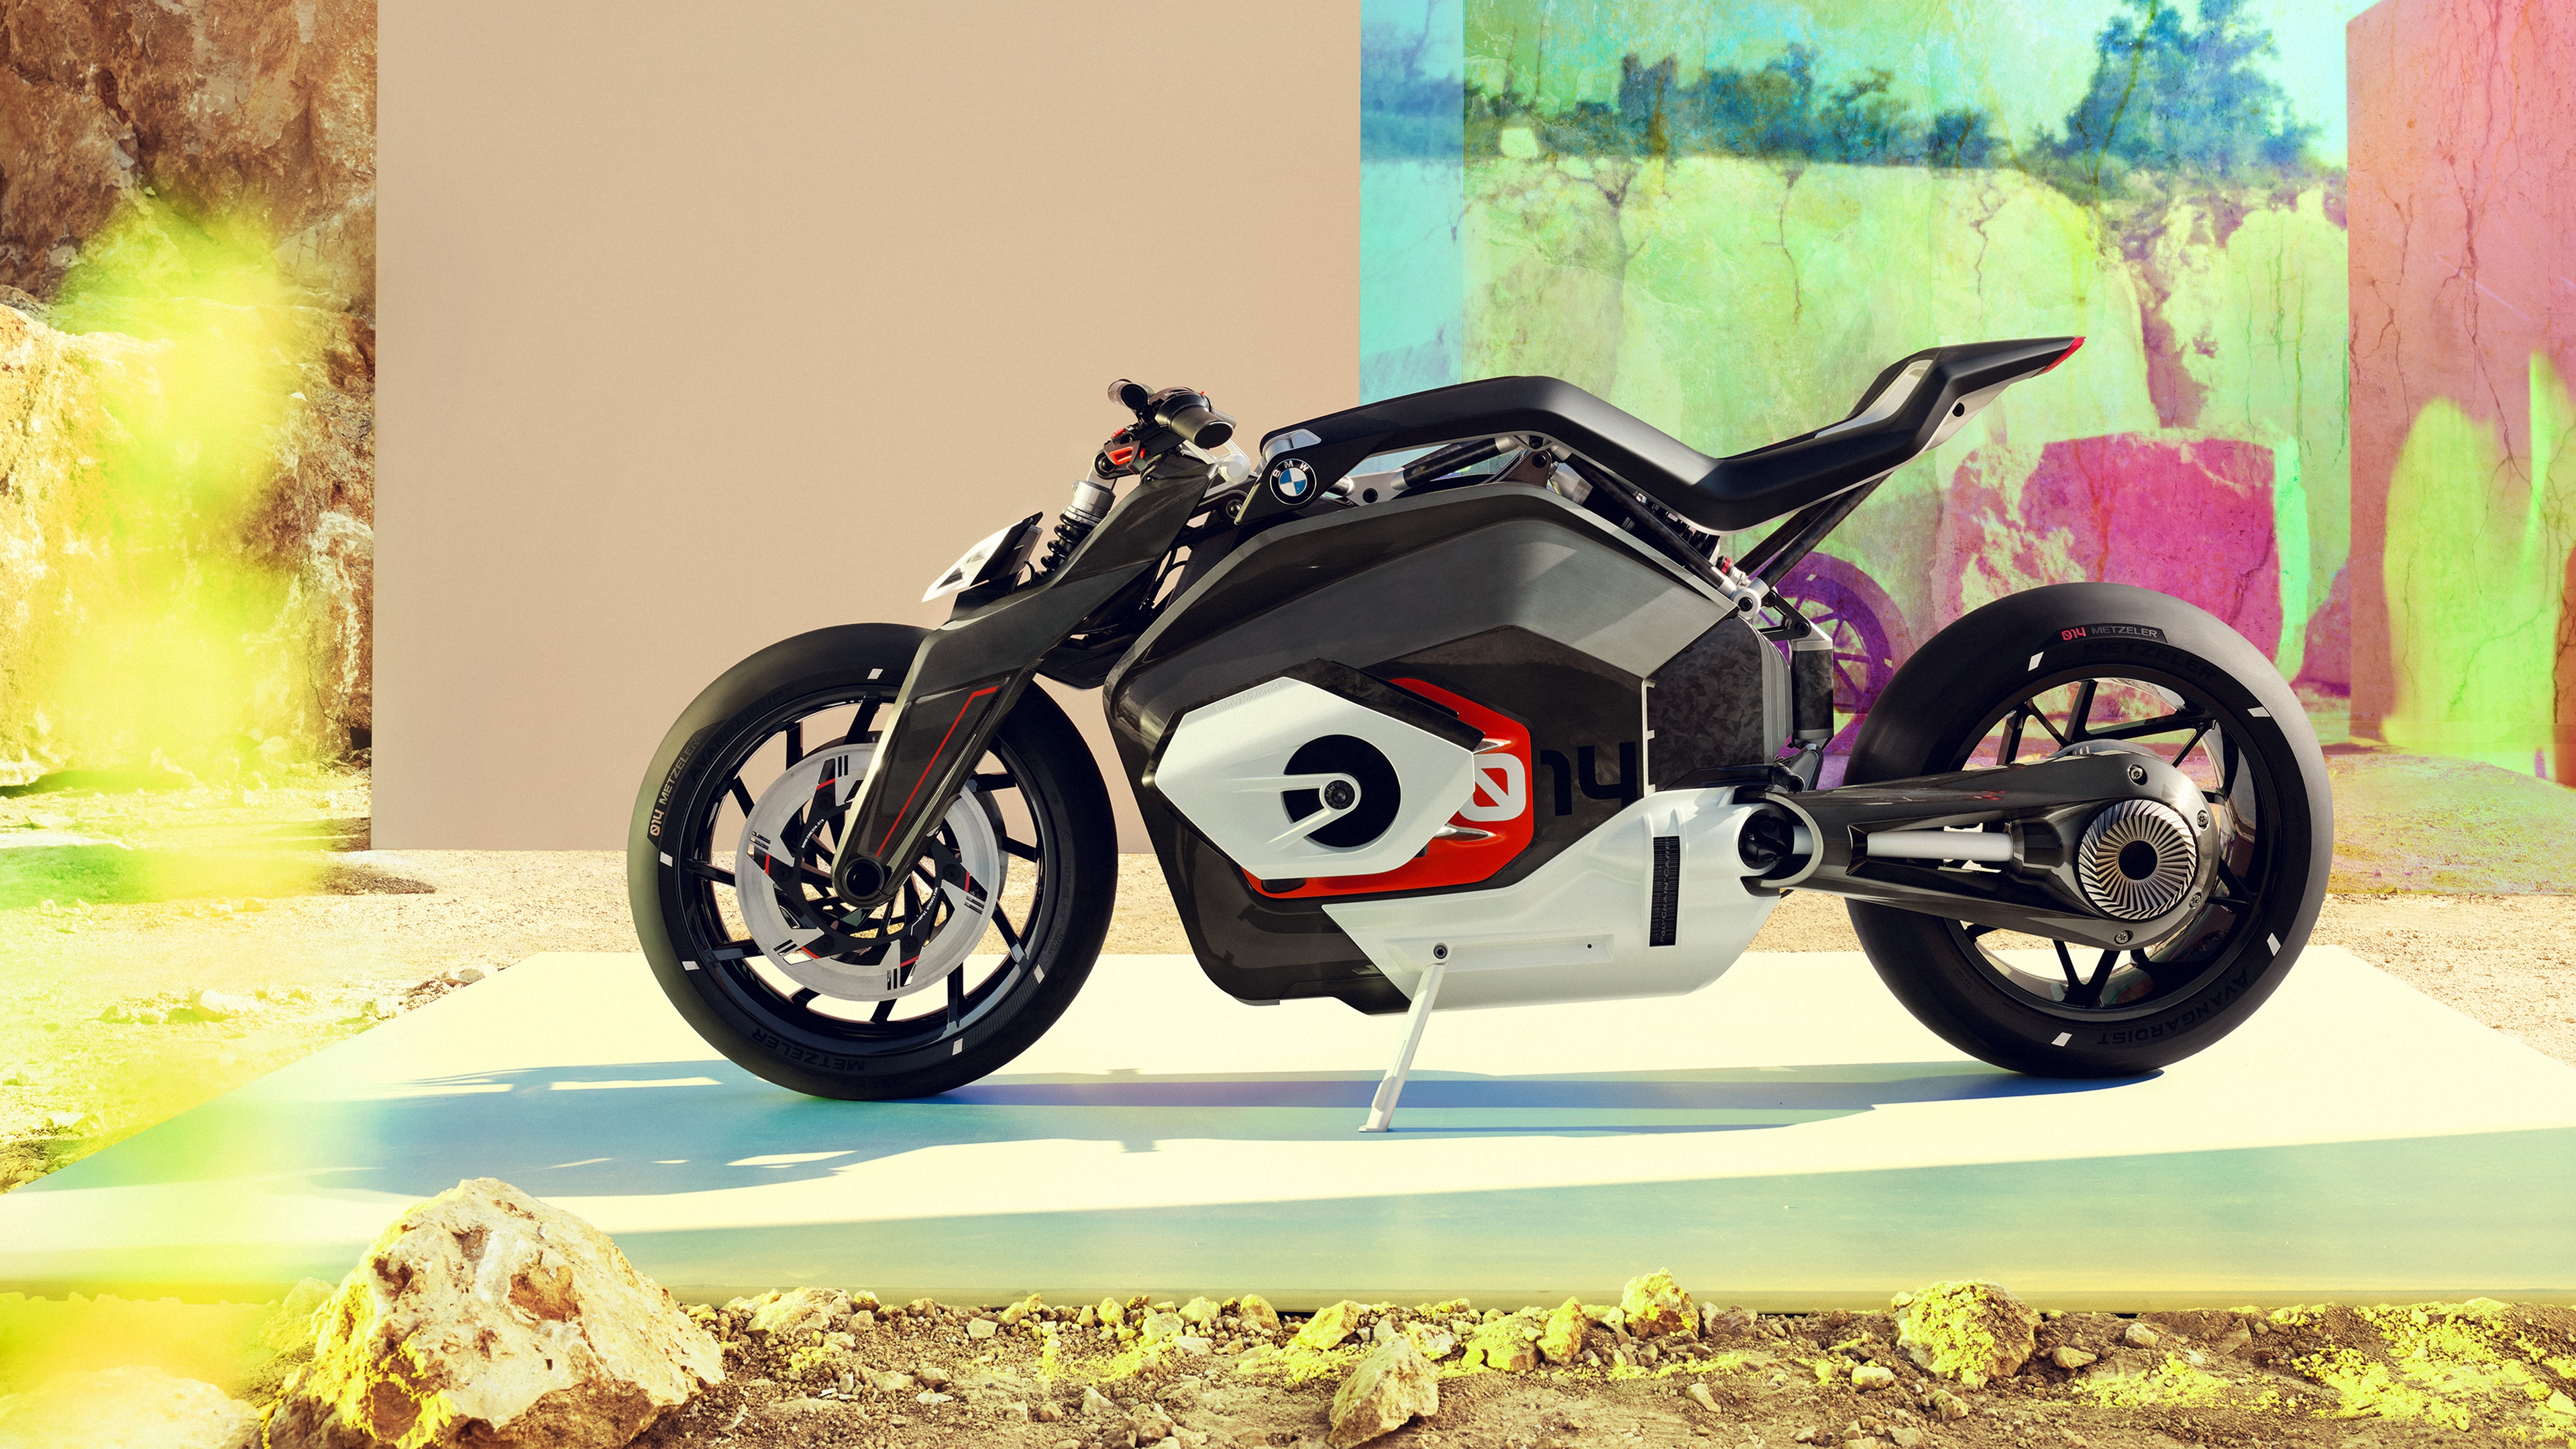 Фото бесплатно обои bmw motorrad vision dc roadster, футуристический мотоцикл, вид сбоку